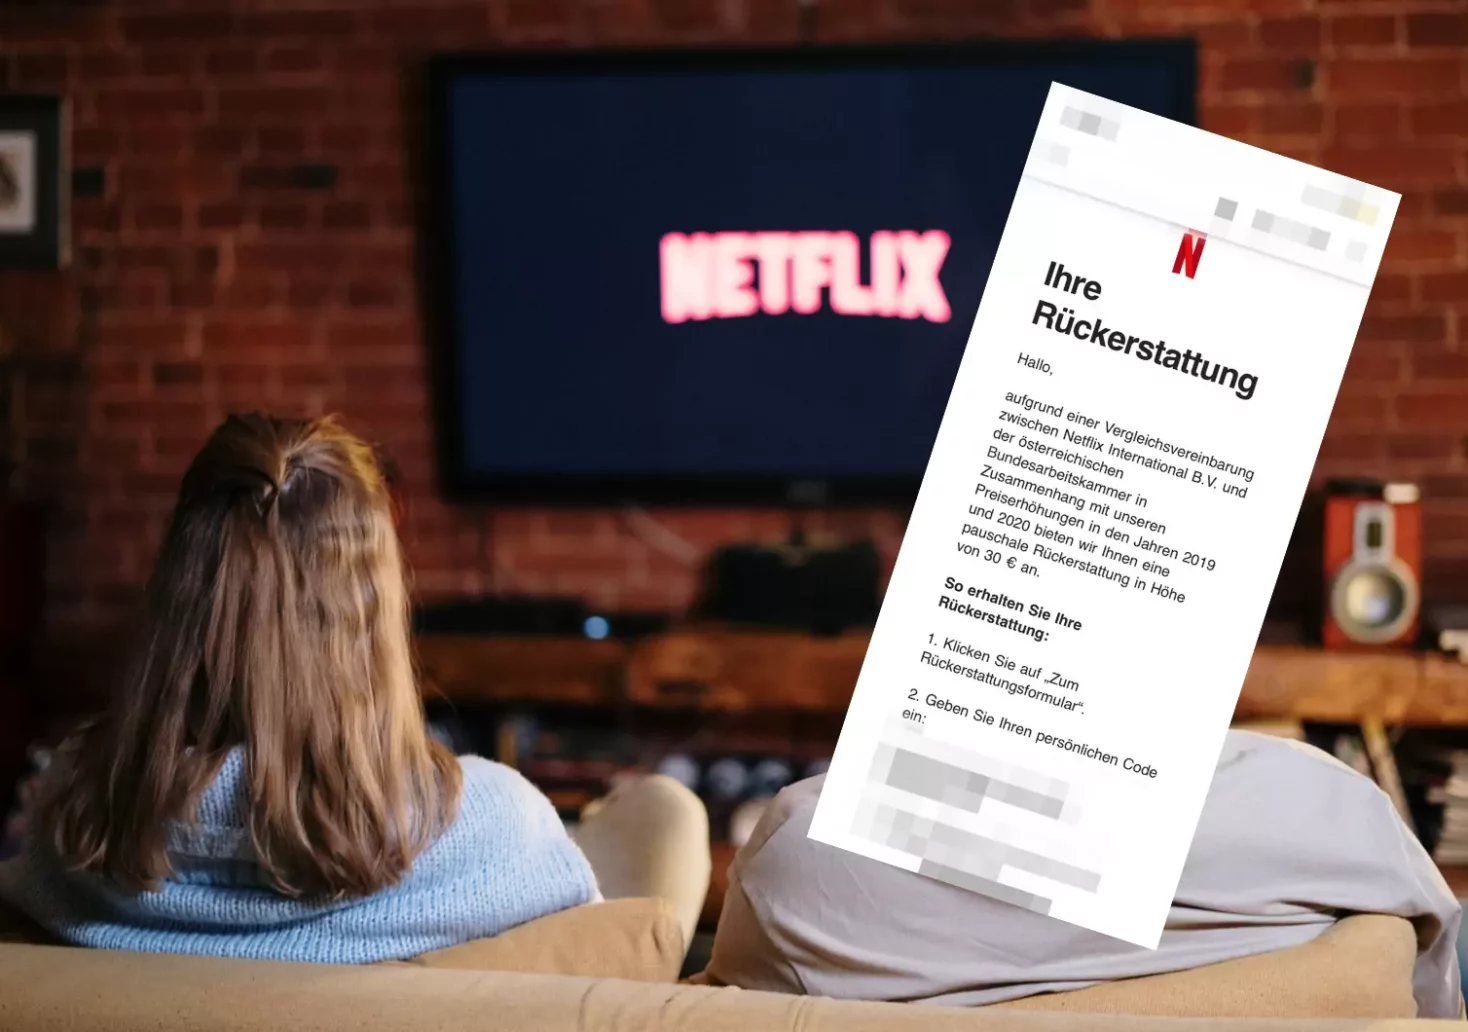 Netflix-Rückerstattung sorgt für Verwirrung: Ist es ein Fake?